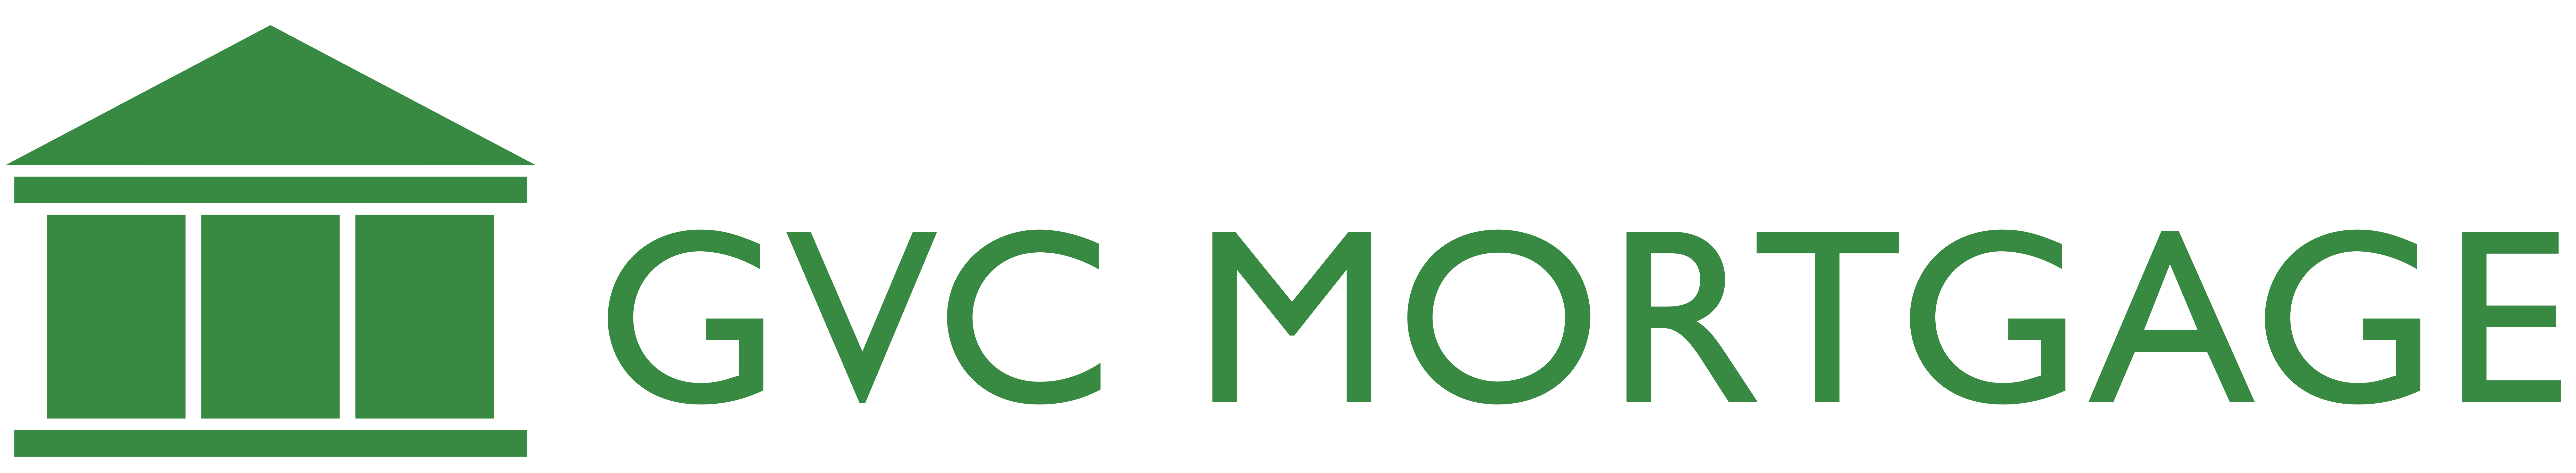 GVC Mortgage, Inc. logo